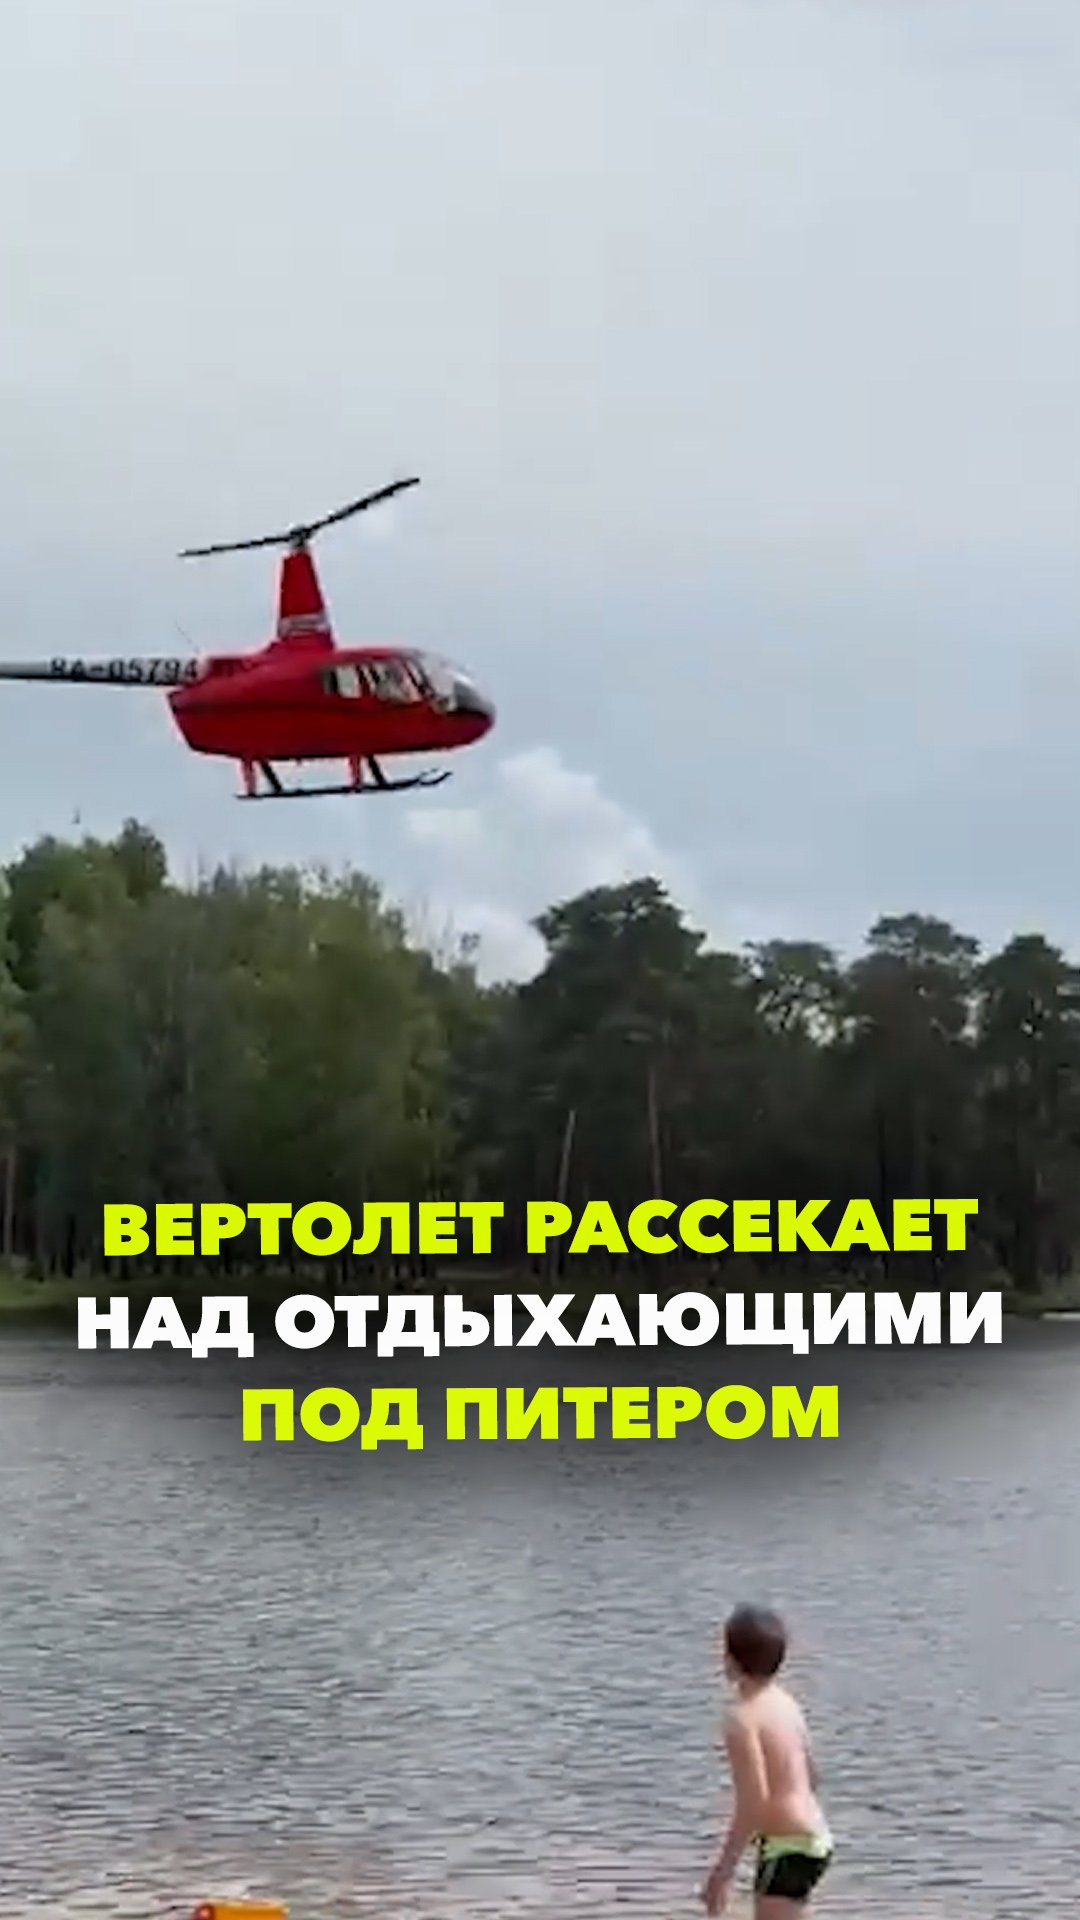 Вертолетные над Коркинским озером: кружил прямо над головами, сдувал полотенца и шезлонги